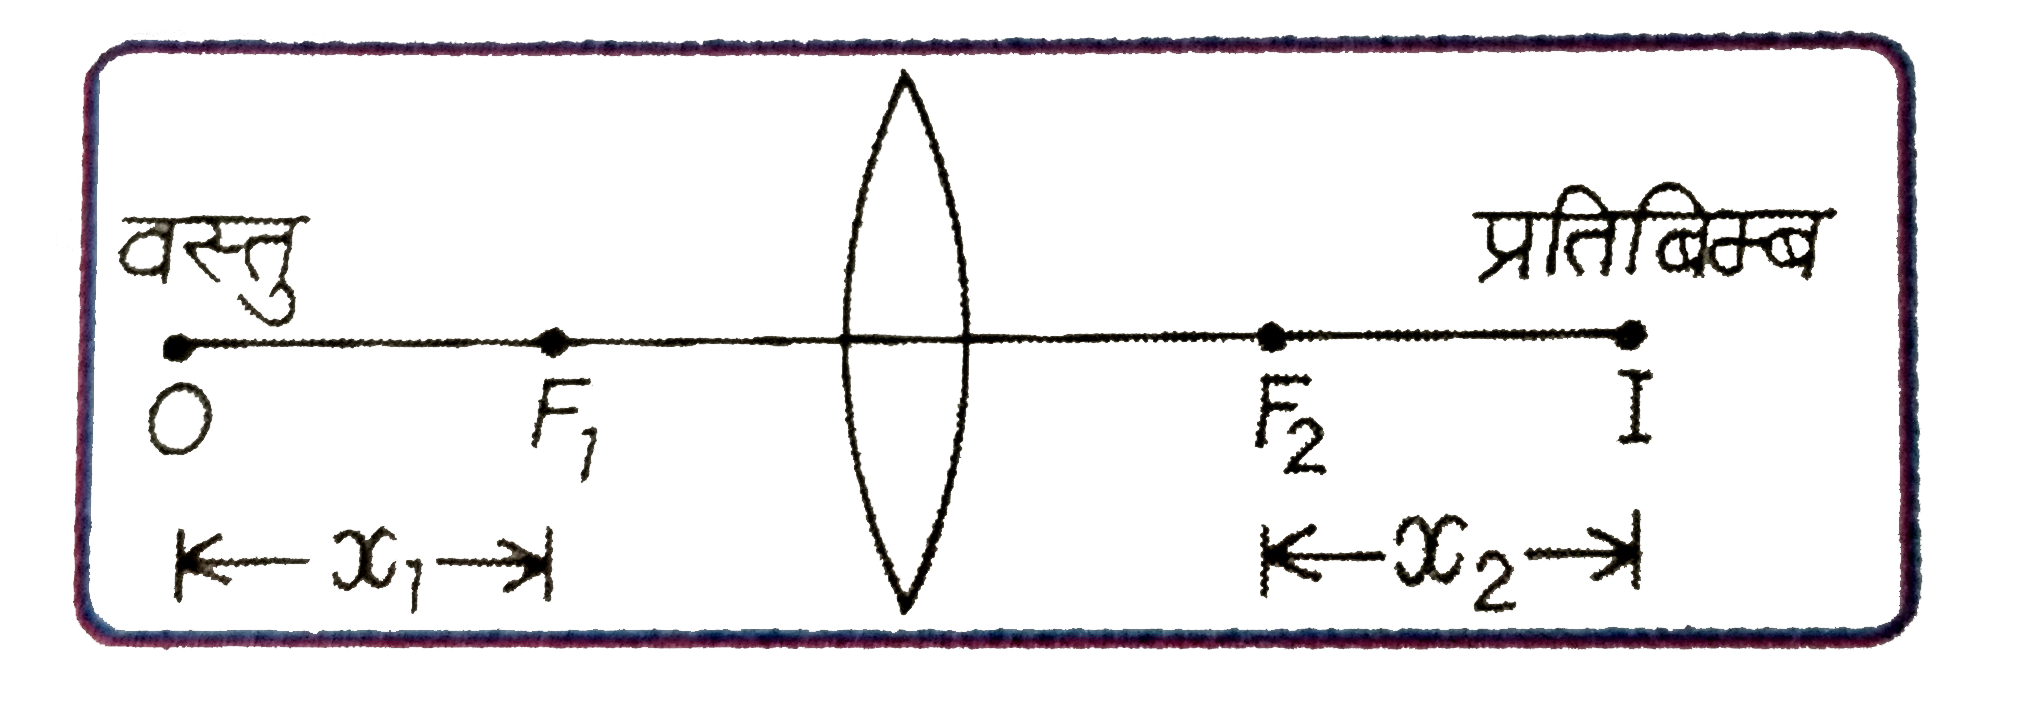 दर्शाये गये चित्र के अनुसार, f  फोकस-दूरी वाले लेन्स के द्वितीय  फोकस से प्रतिबिम्ब की न्यूनतम  दूरी x(2)  का मान है :